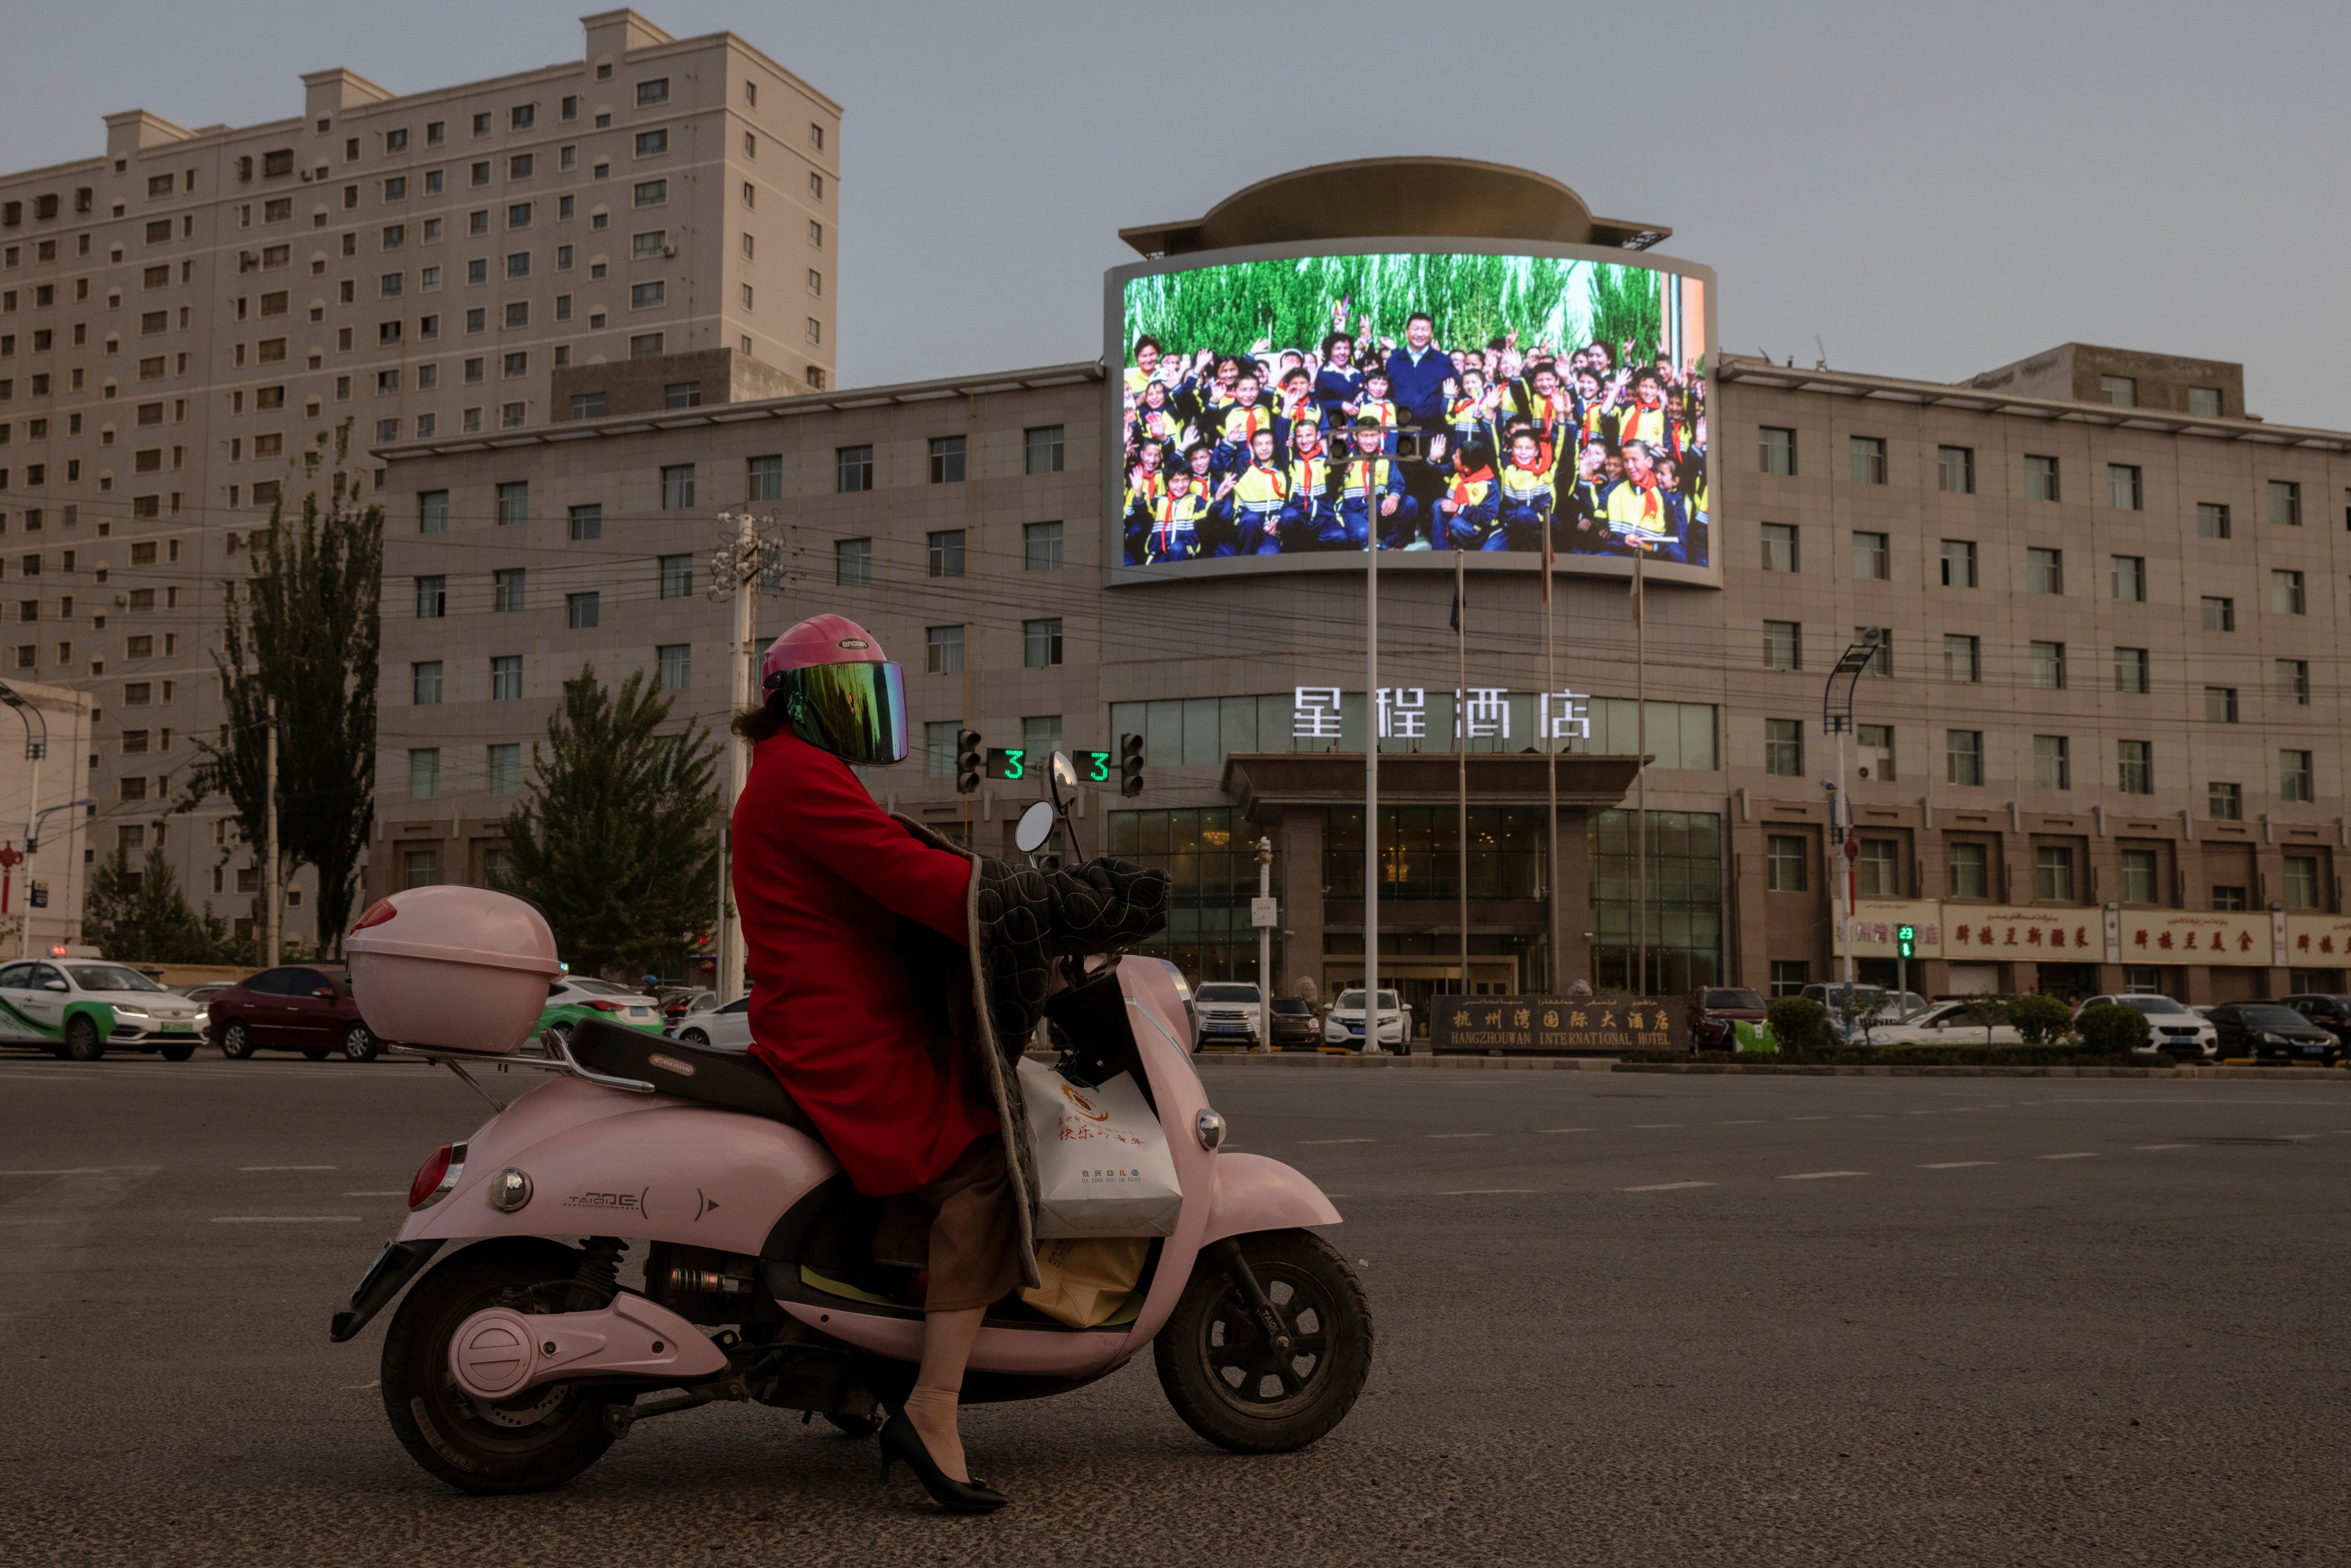 A screen shows President Xi Jinping among children at a traffic junction in Hotan, Xinjiang